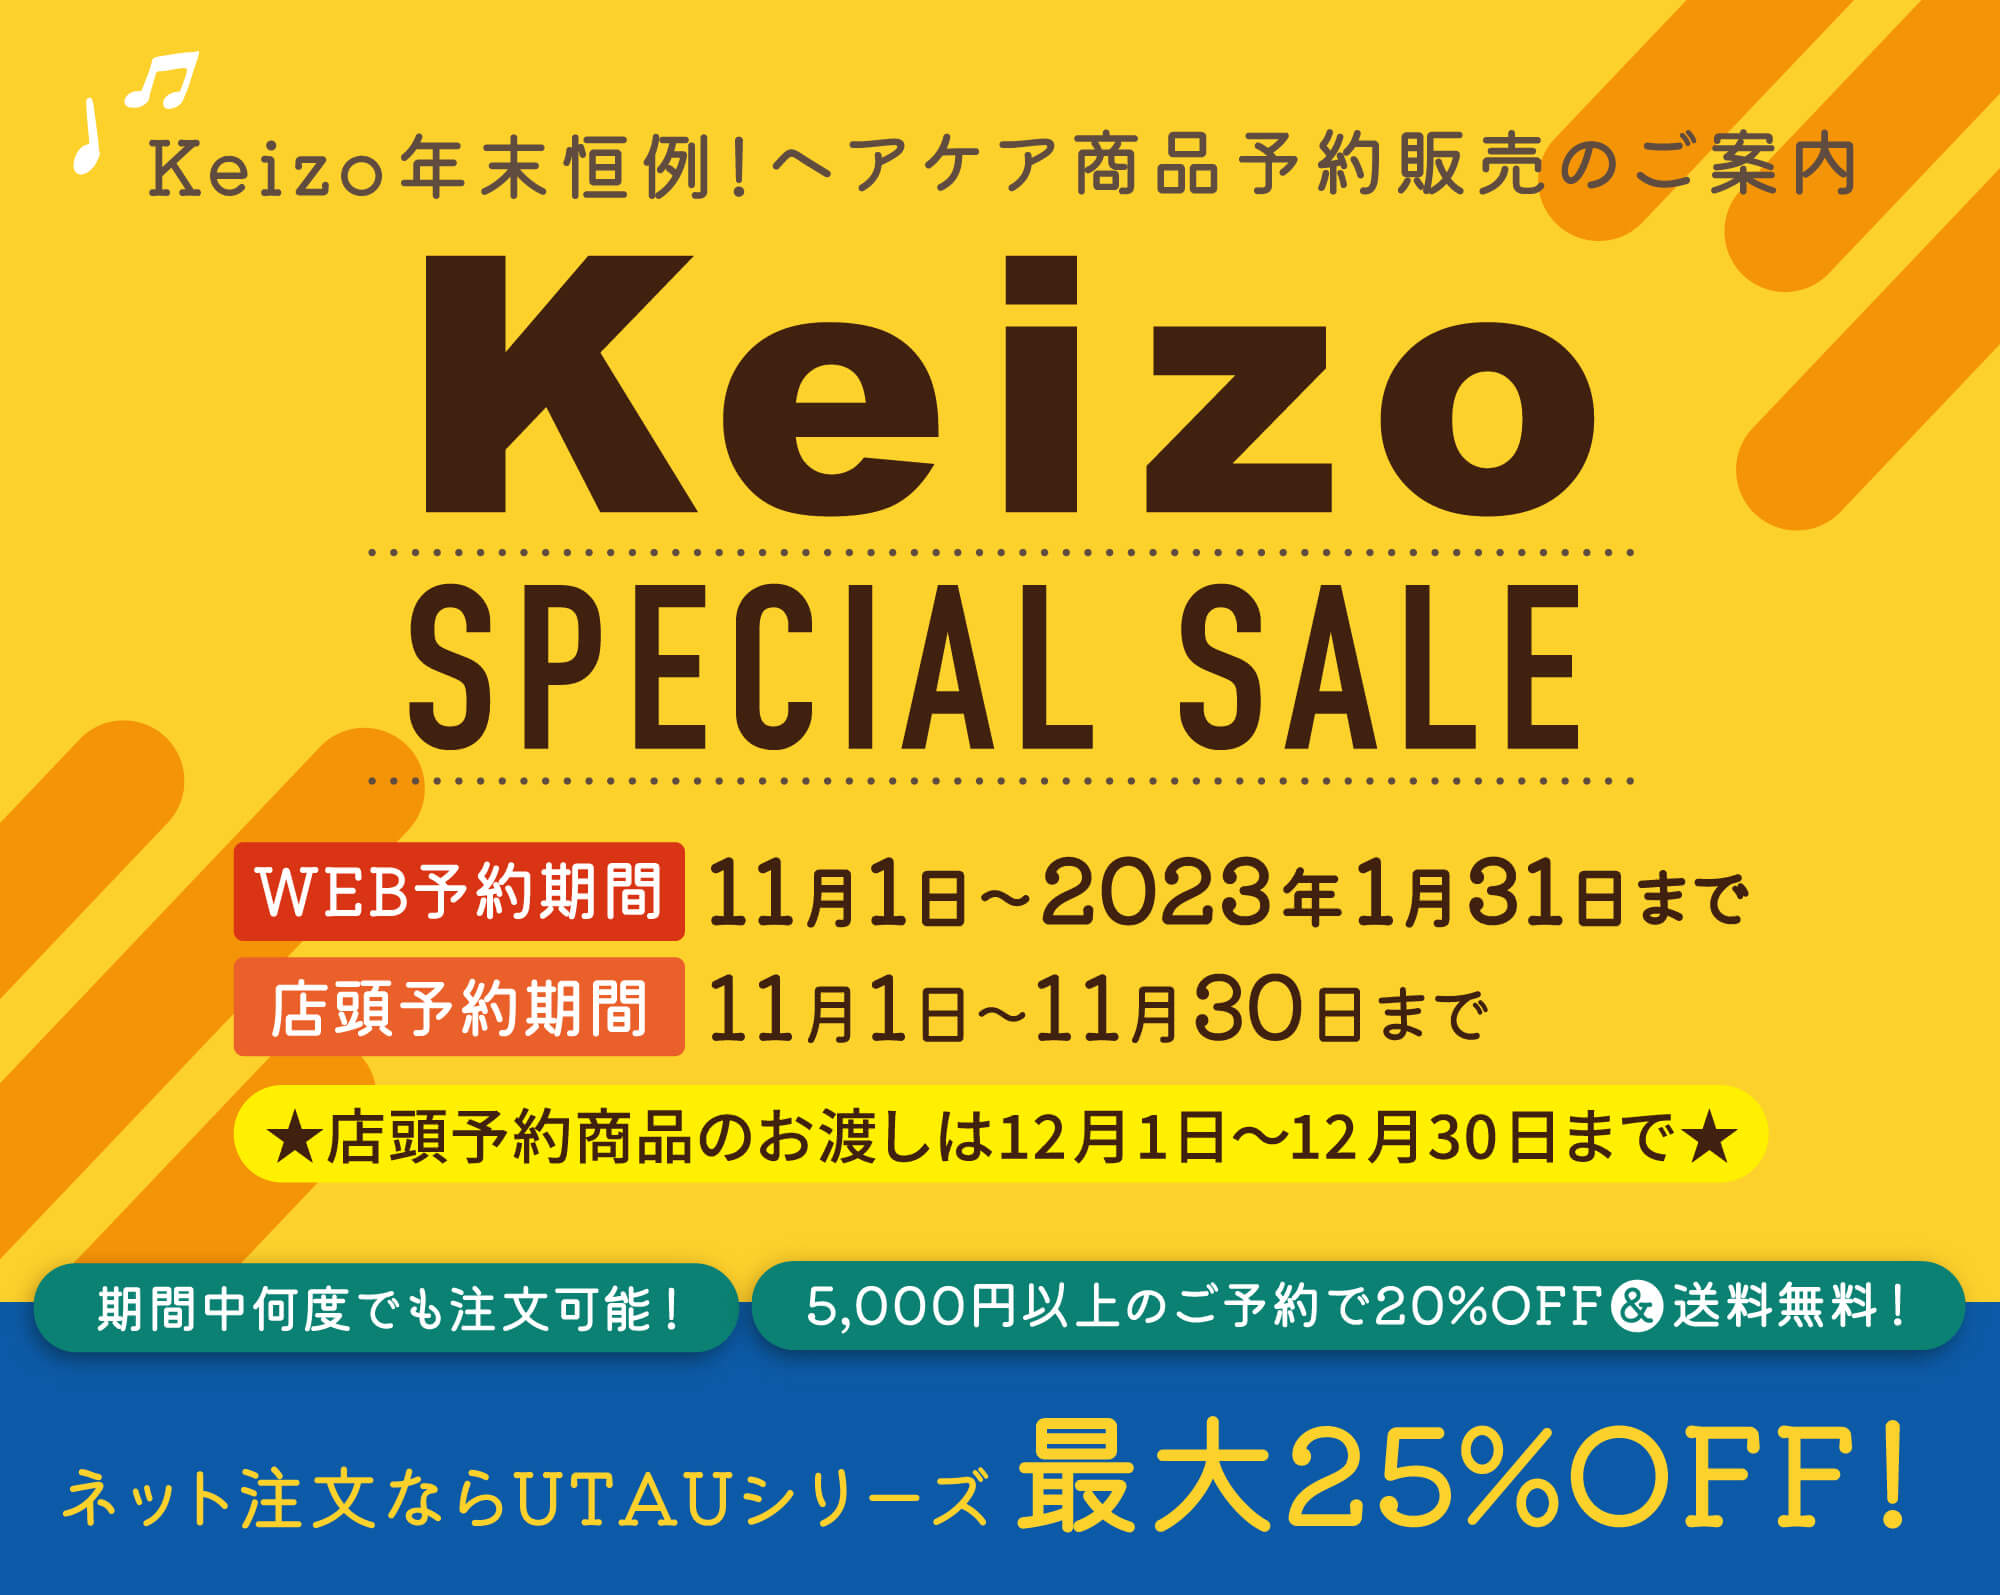 Keizo恒例の商品先取り予約販売のご案内｜Keizo SPECIAL SALE